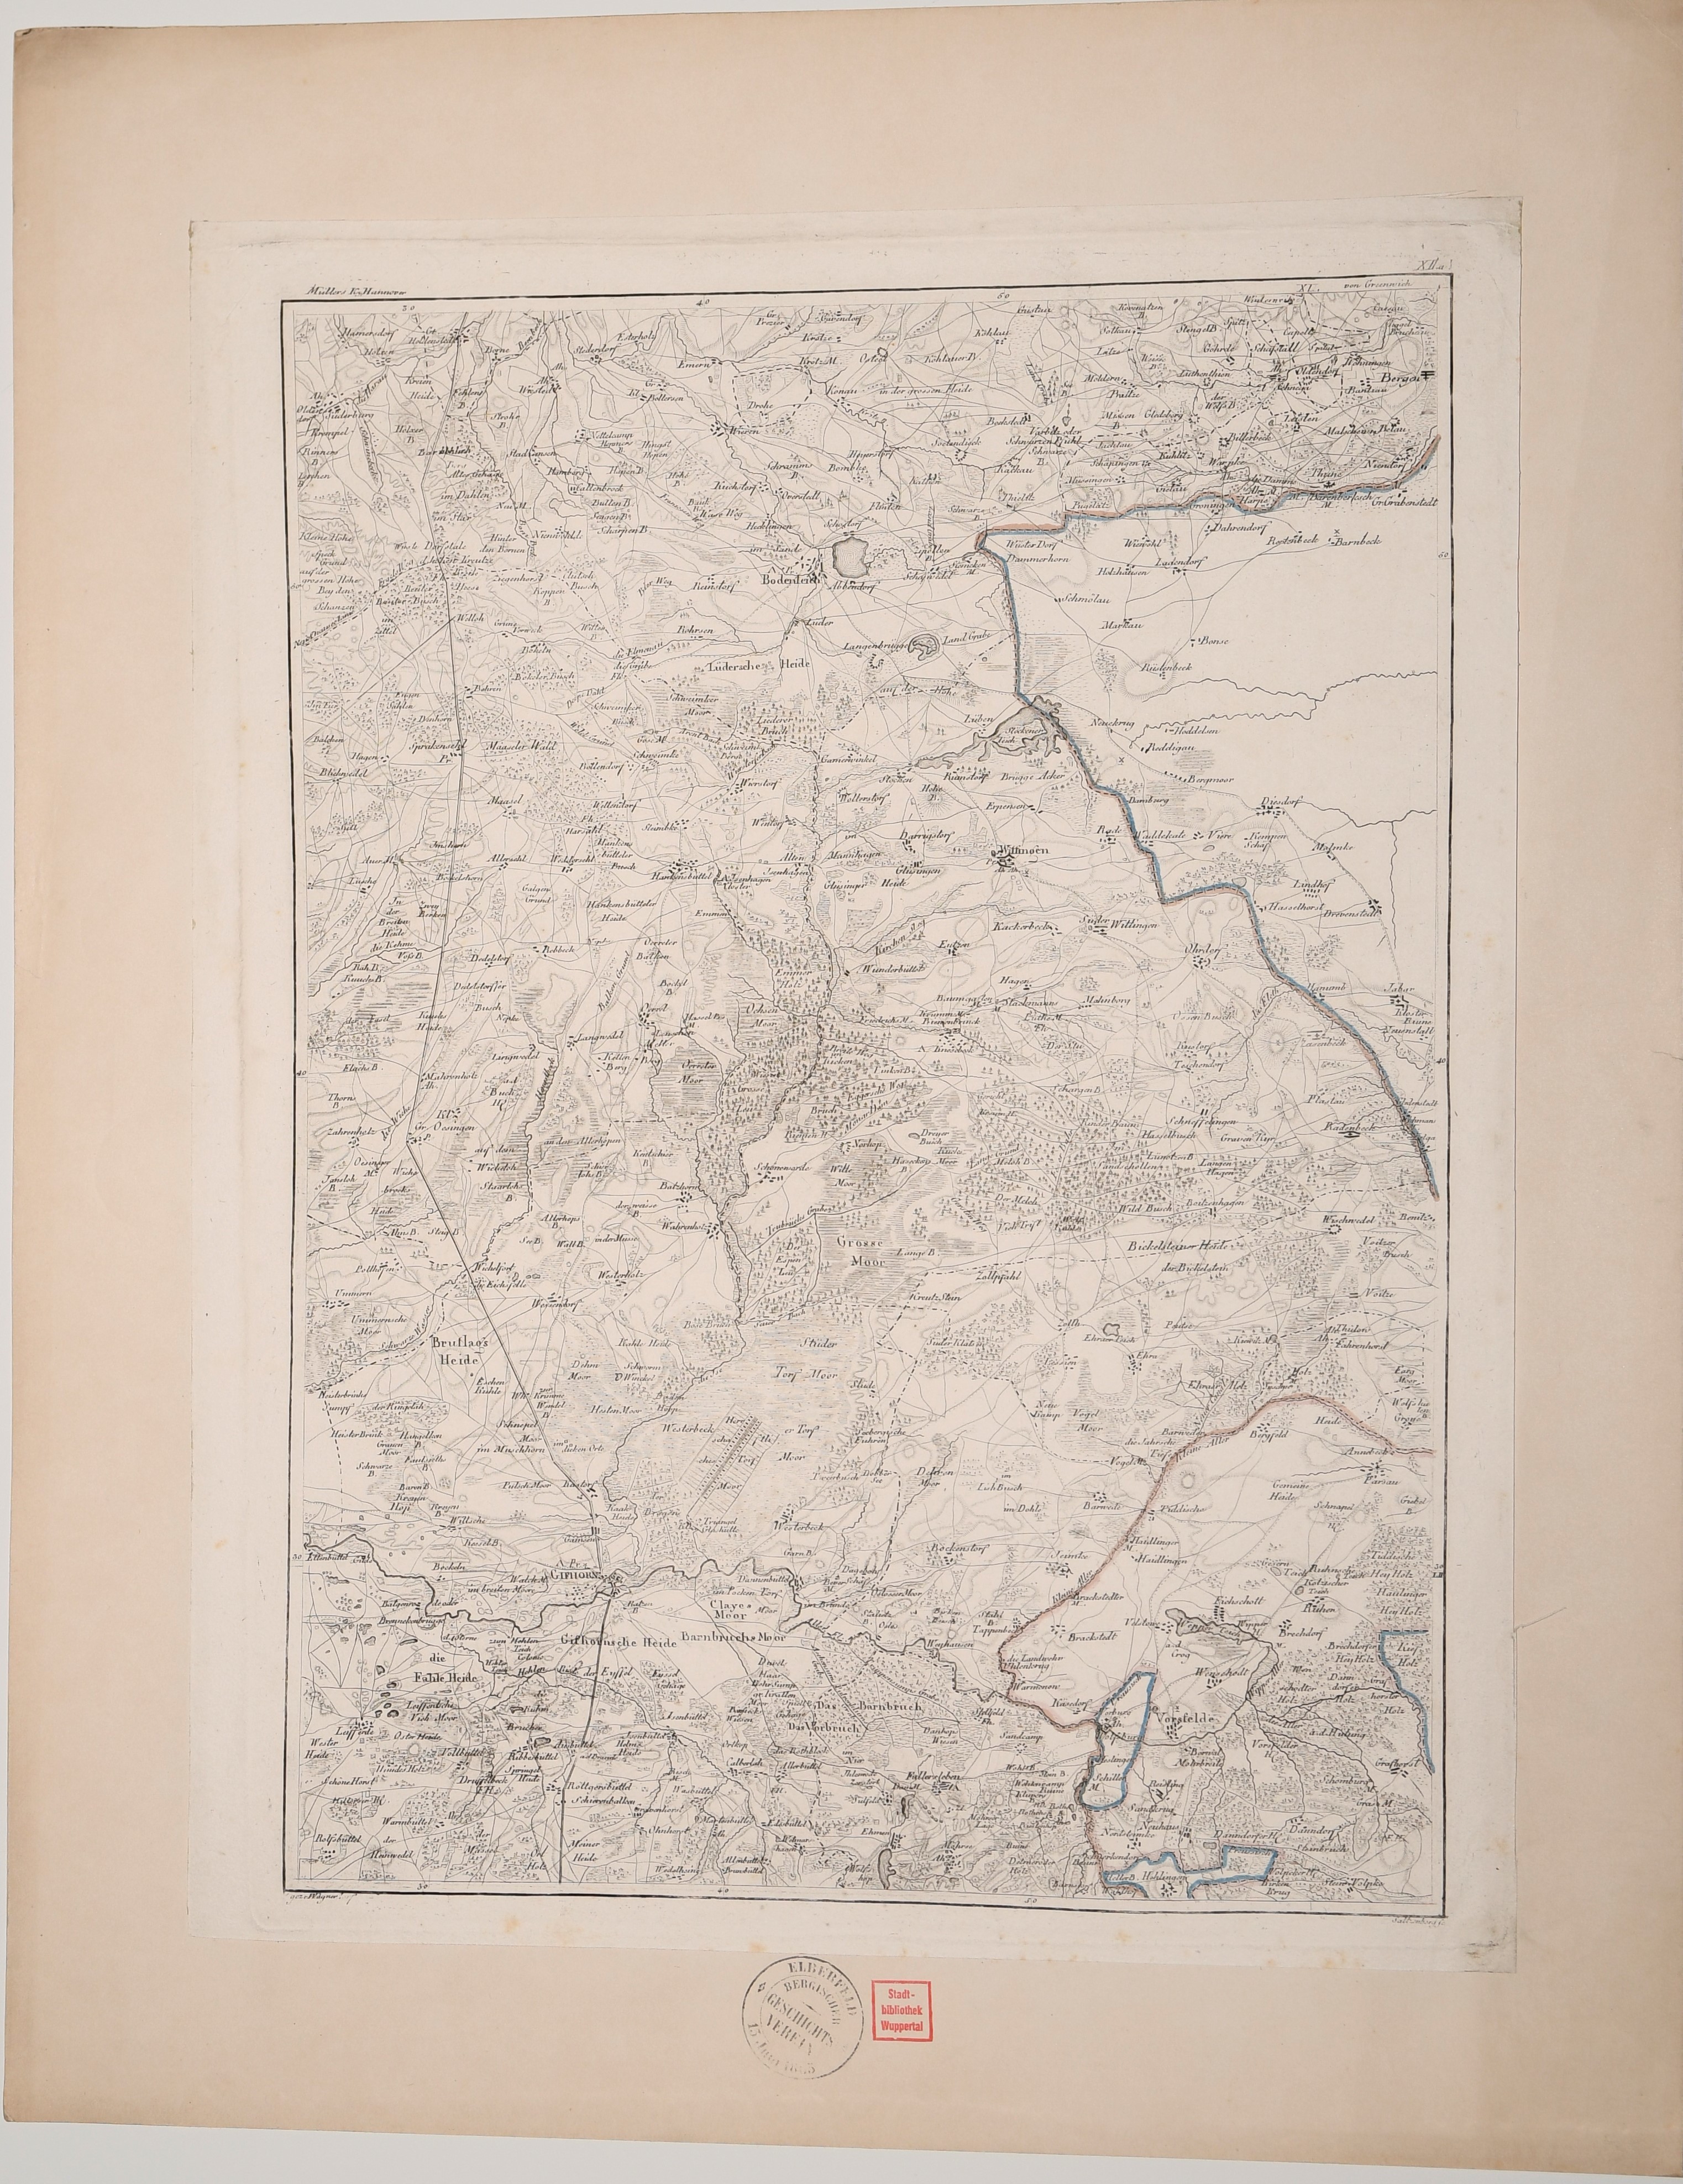 Karte "Brutlags Heide" und Umgebung ((C) Sammlung Bergischer Geschichtsverein e.V. CC BY-NC)